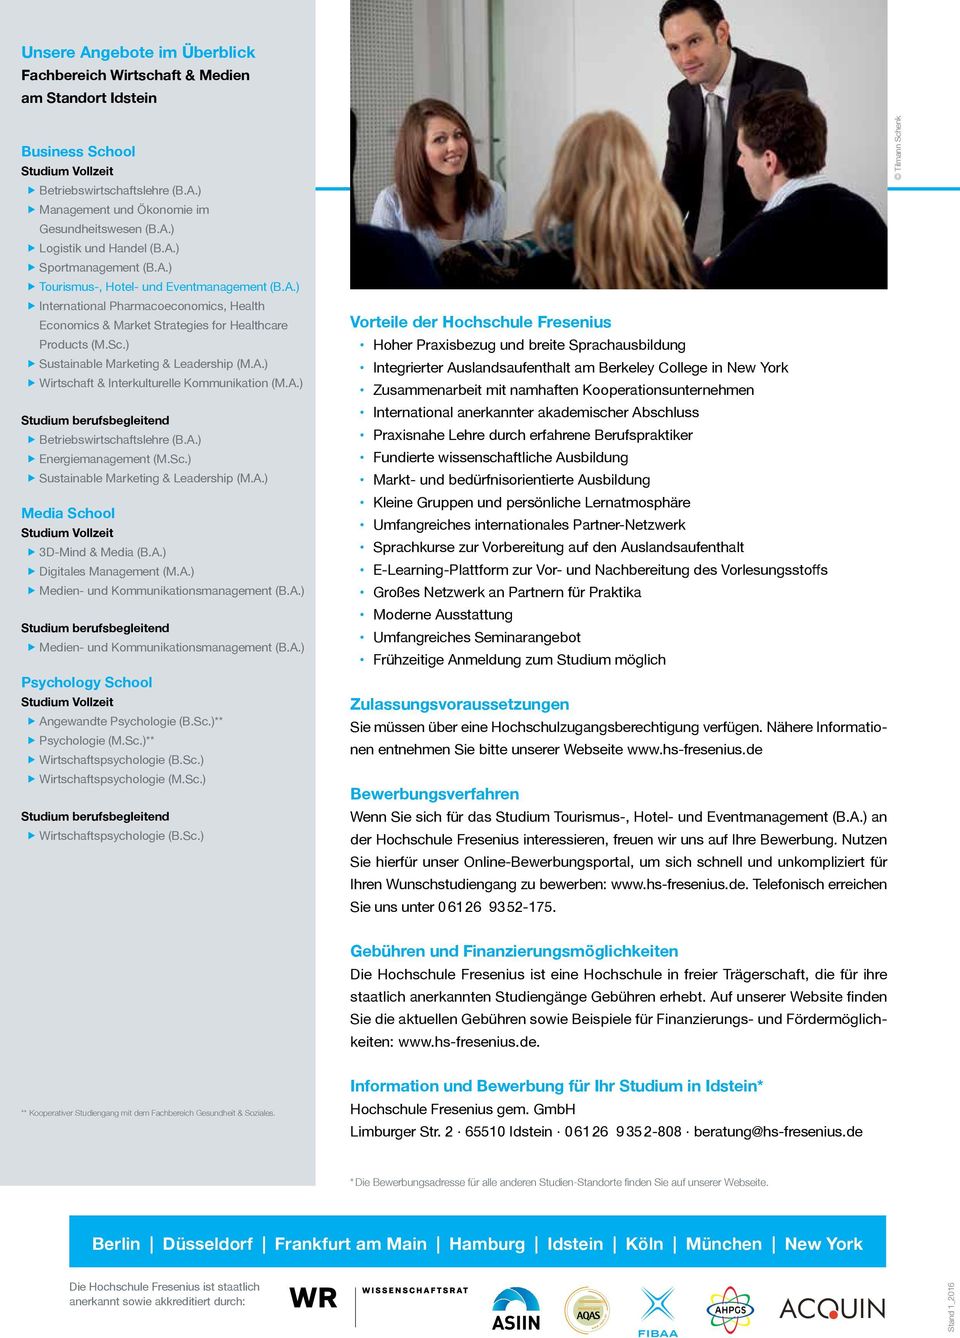 ) Sustainable Marketing & Leadership (M.A.) Wirtschaft & Interkulturelle Kommunikation (M.A.) Studium berufsbegleitend Betriebswirtschaftslehre (B.A.) Energiemanagement (M.Sc.